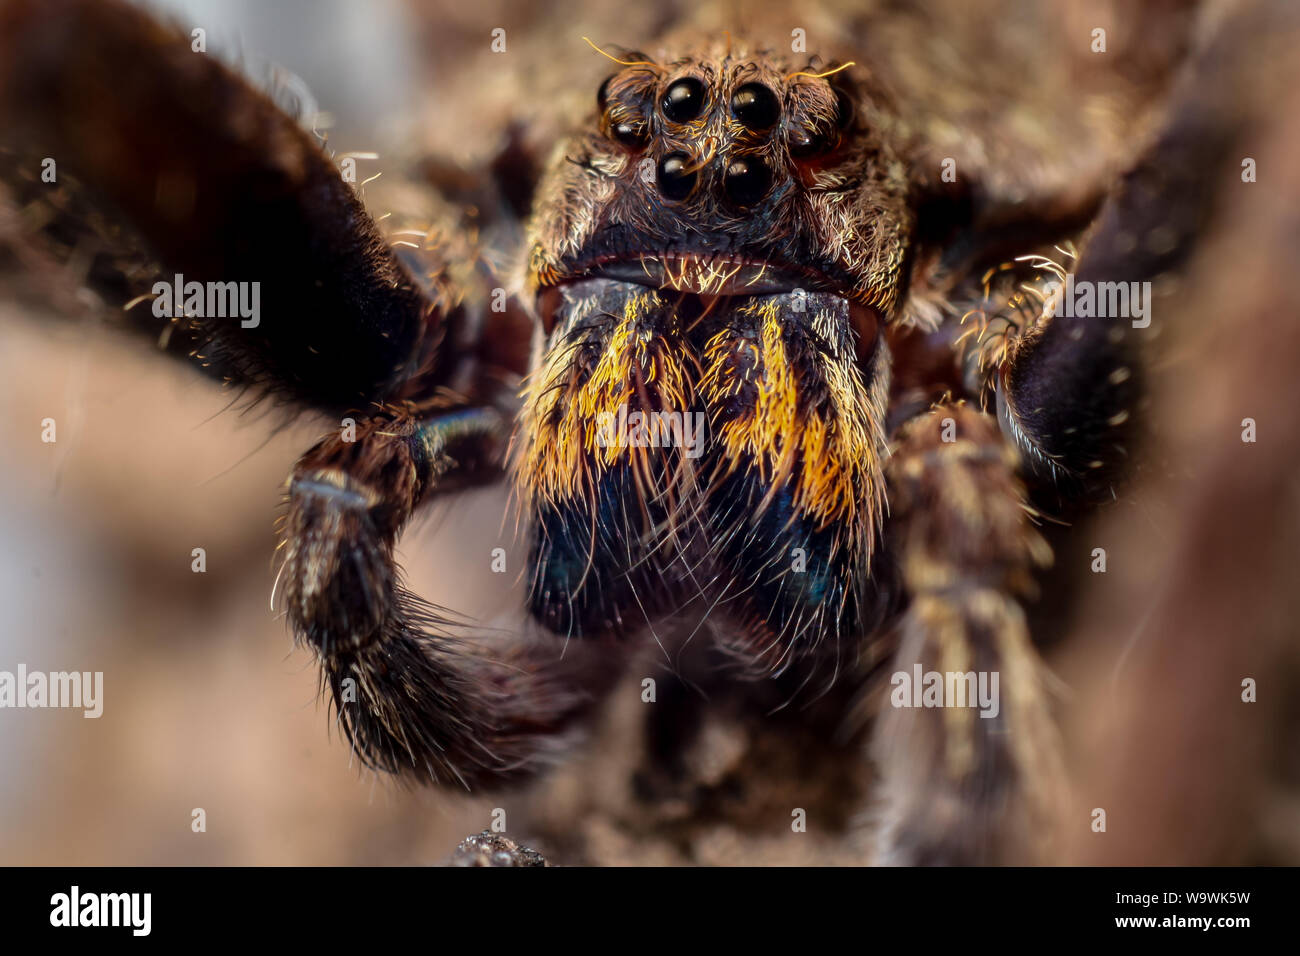 Portrait d'un frontal Enoploctenus spidre errant de la forêt atlantique au Brésil, présente le visage d'araignées en détails Banque D'Images